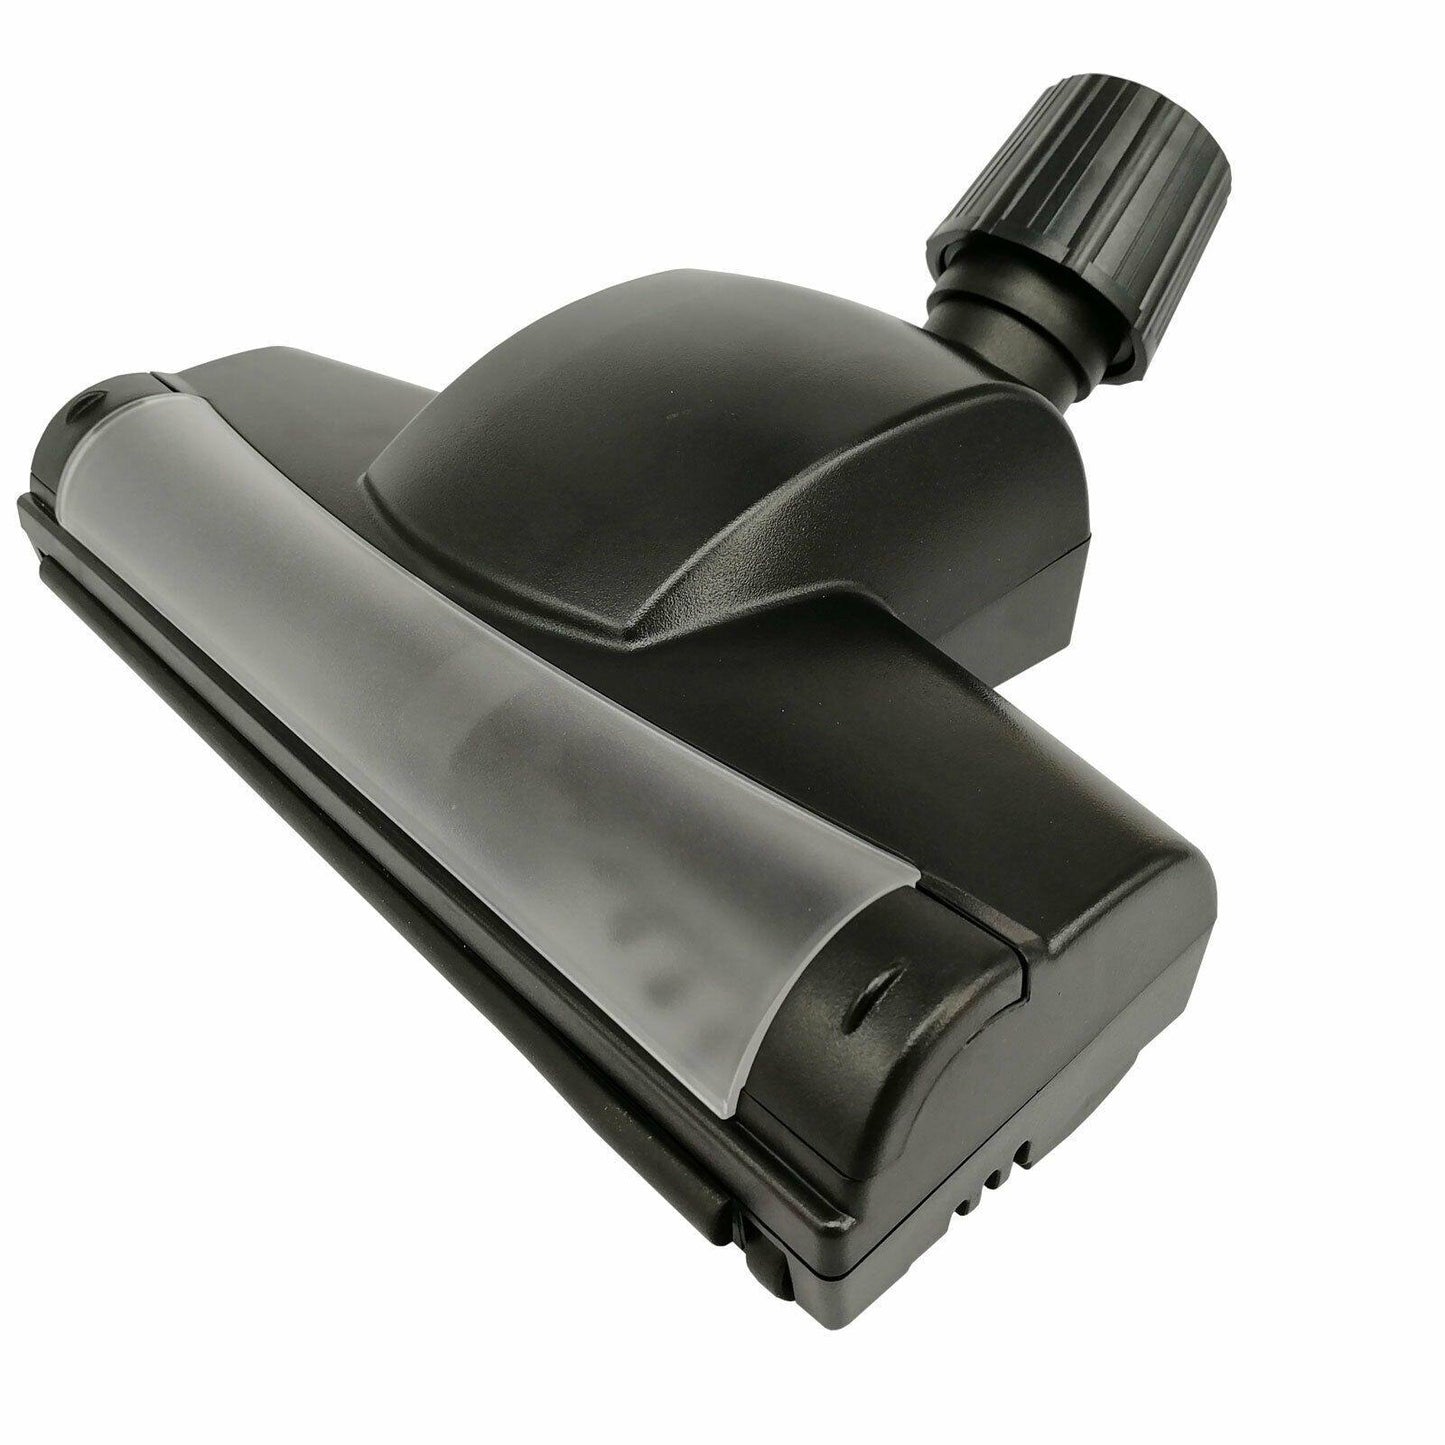 Universal 32 35mm Vacuum Turbo Head Floor Nozzle Brush Tool Sparesbarn